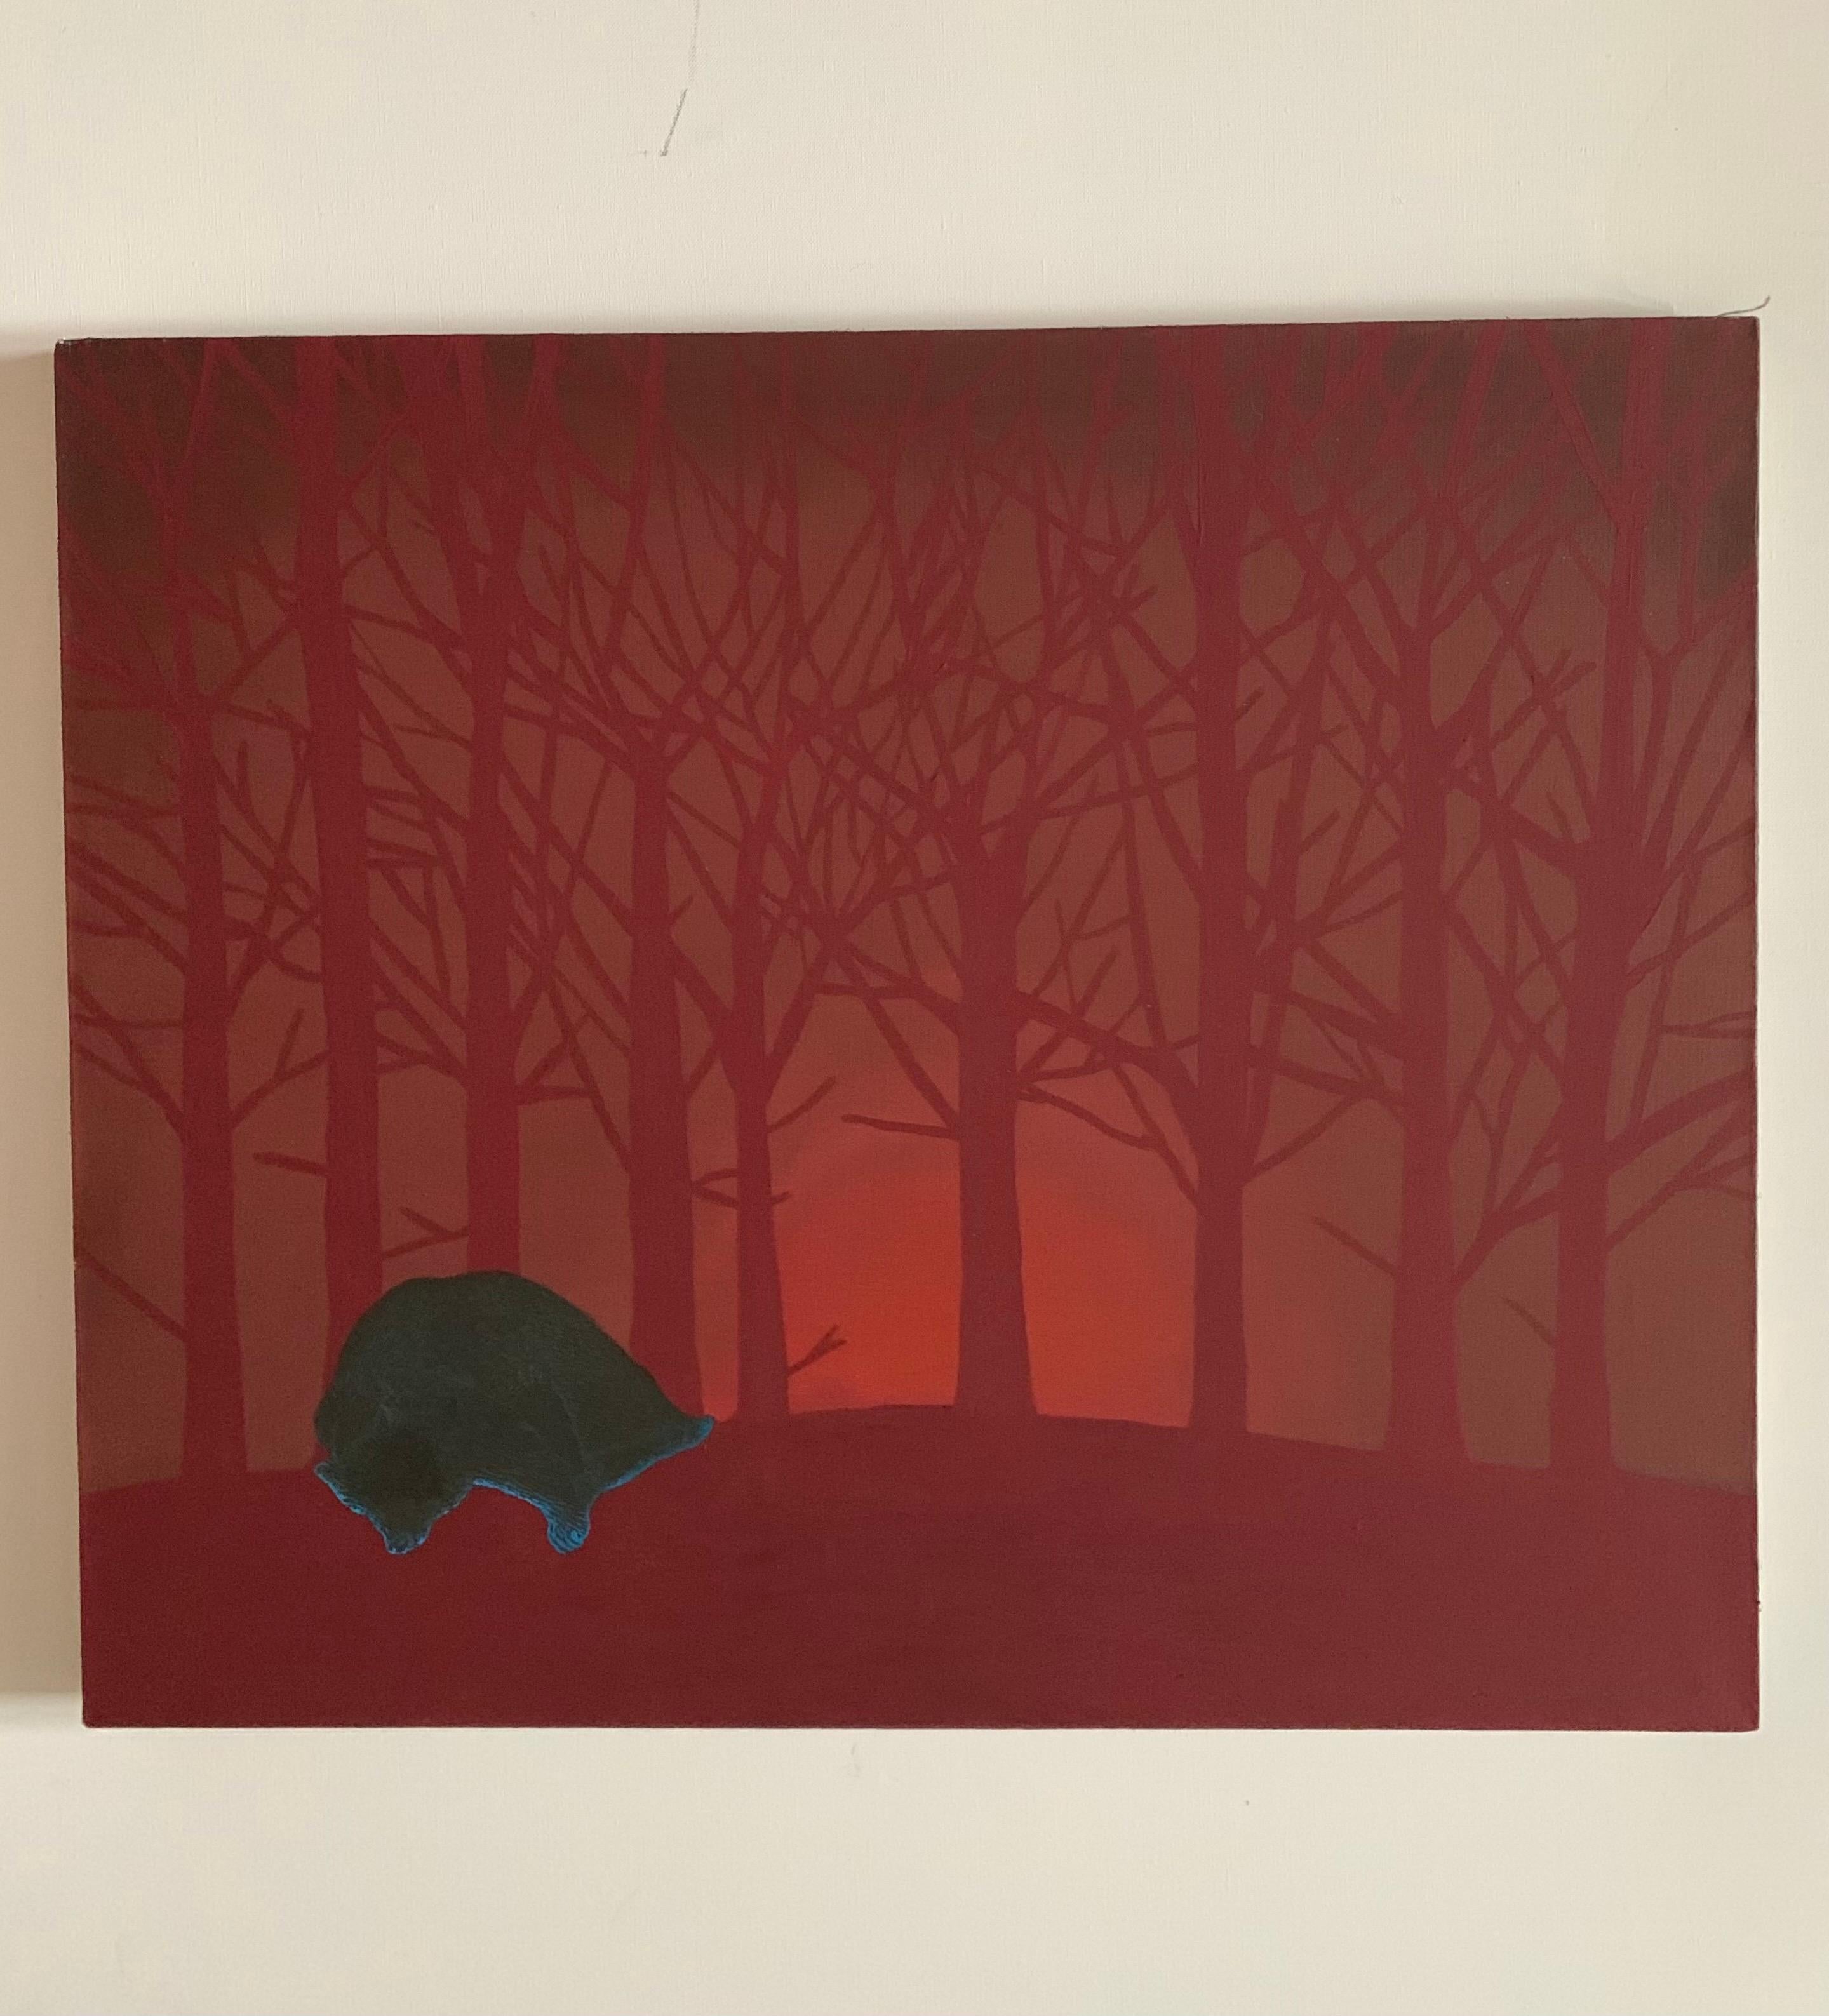 Morning Hour (ours endormi) - Peinture à l'huile - Animaux figuratifs, réalisme magique - Contemporain Painting par Aleksandra Bujnowska